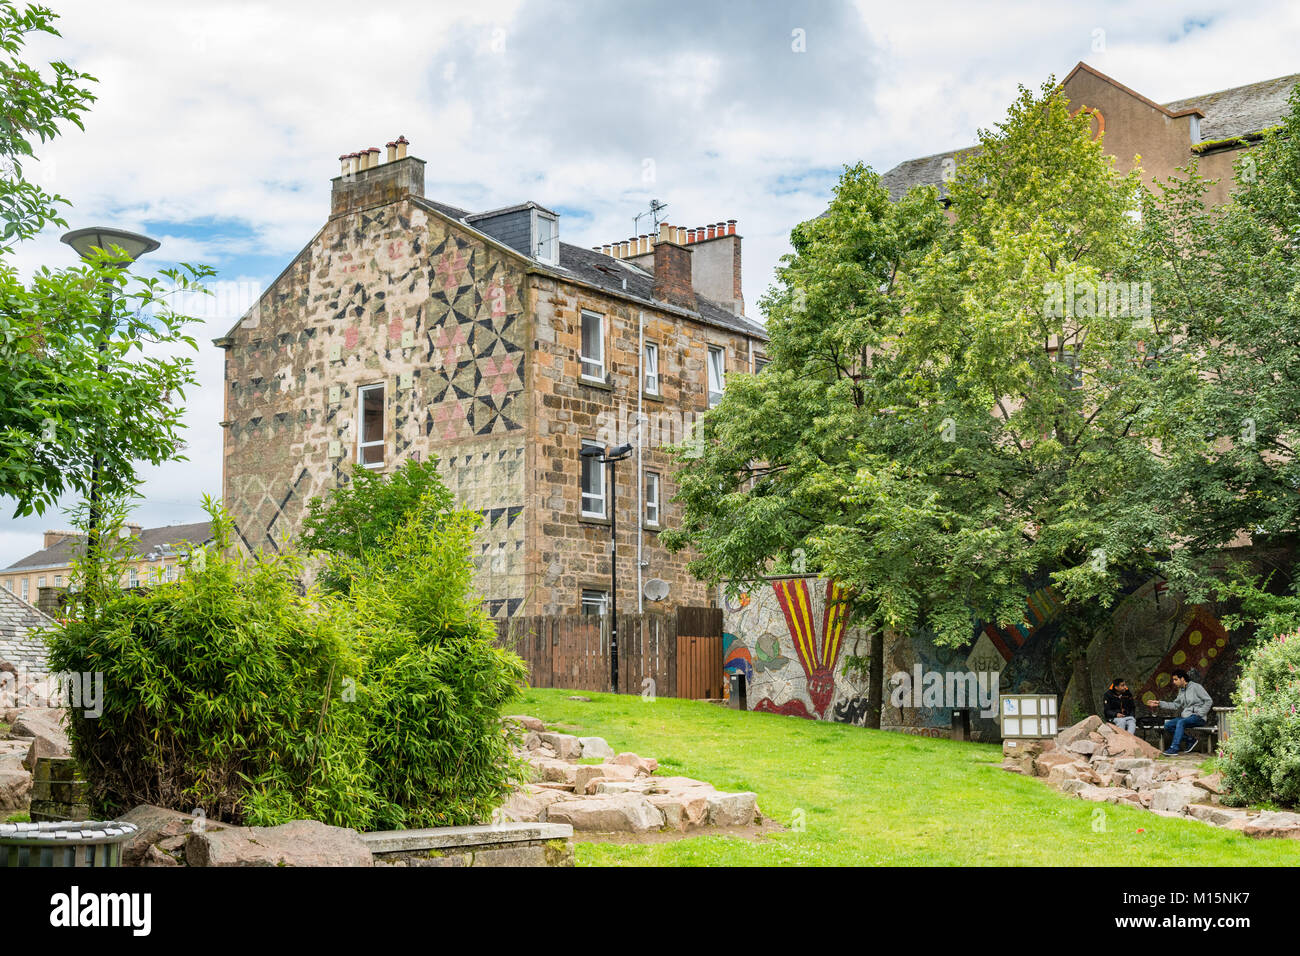 Garnethill Park - murale e gable end arte ambientale - Garnethill, Glasgow, Scotland, Regno Unito Foto Stock